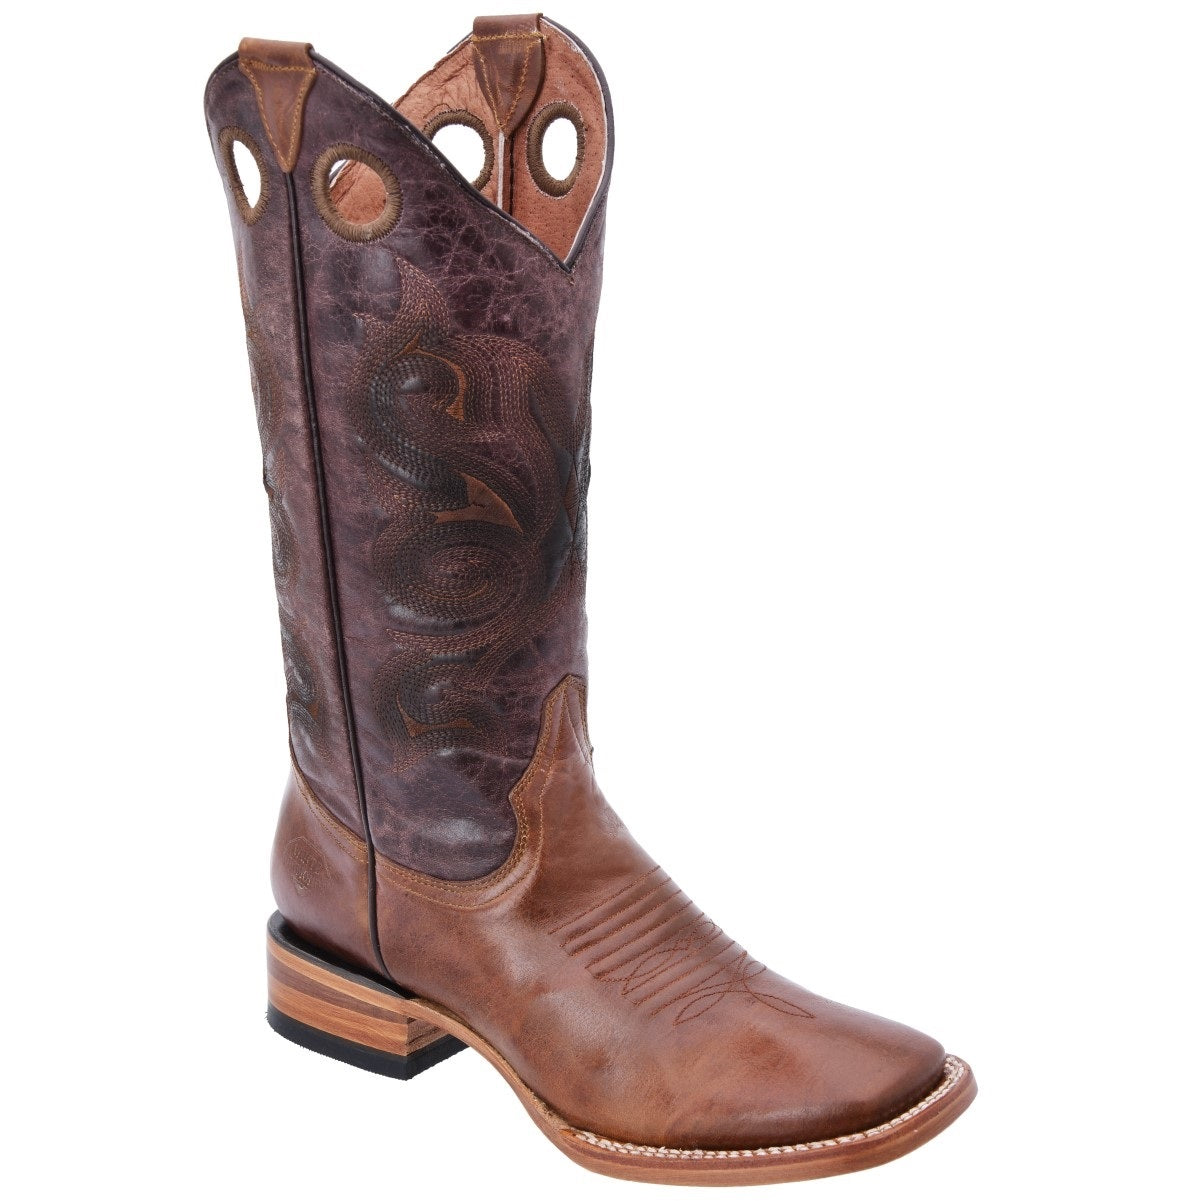 Botas Vaqueras TM-WD0531 - Western Boots